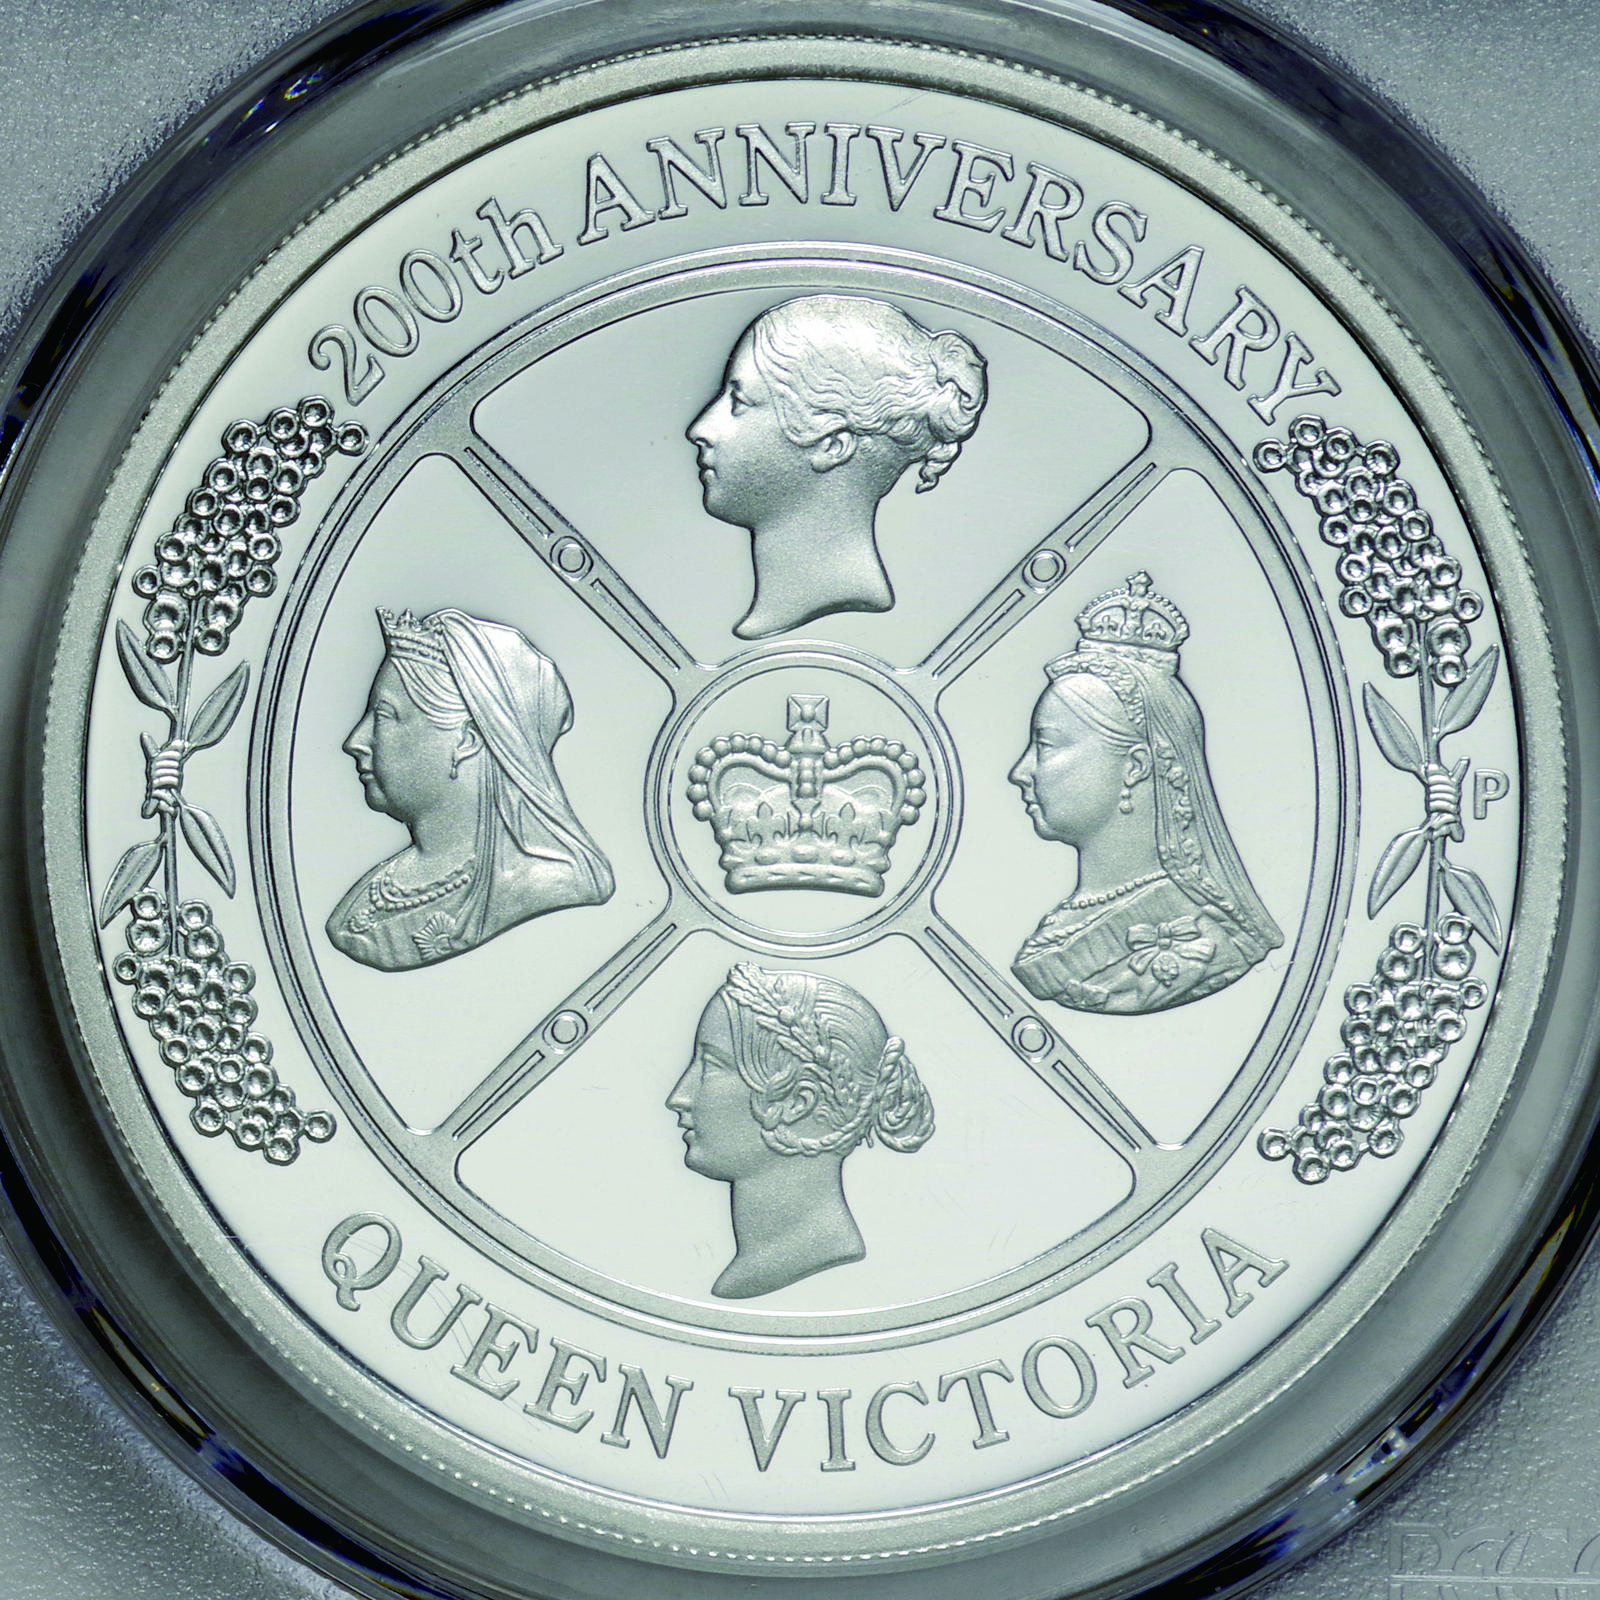 発行5000枚2019年 オーストラリア 1ドル 銀貨 ヴィクトリア女王 生誕200周年記念